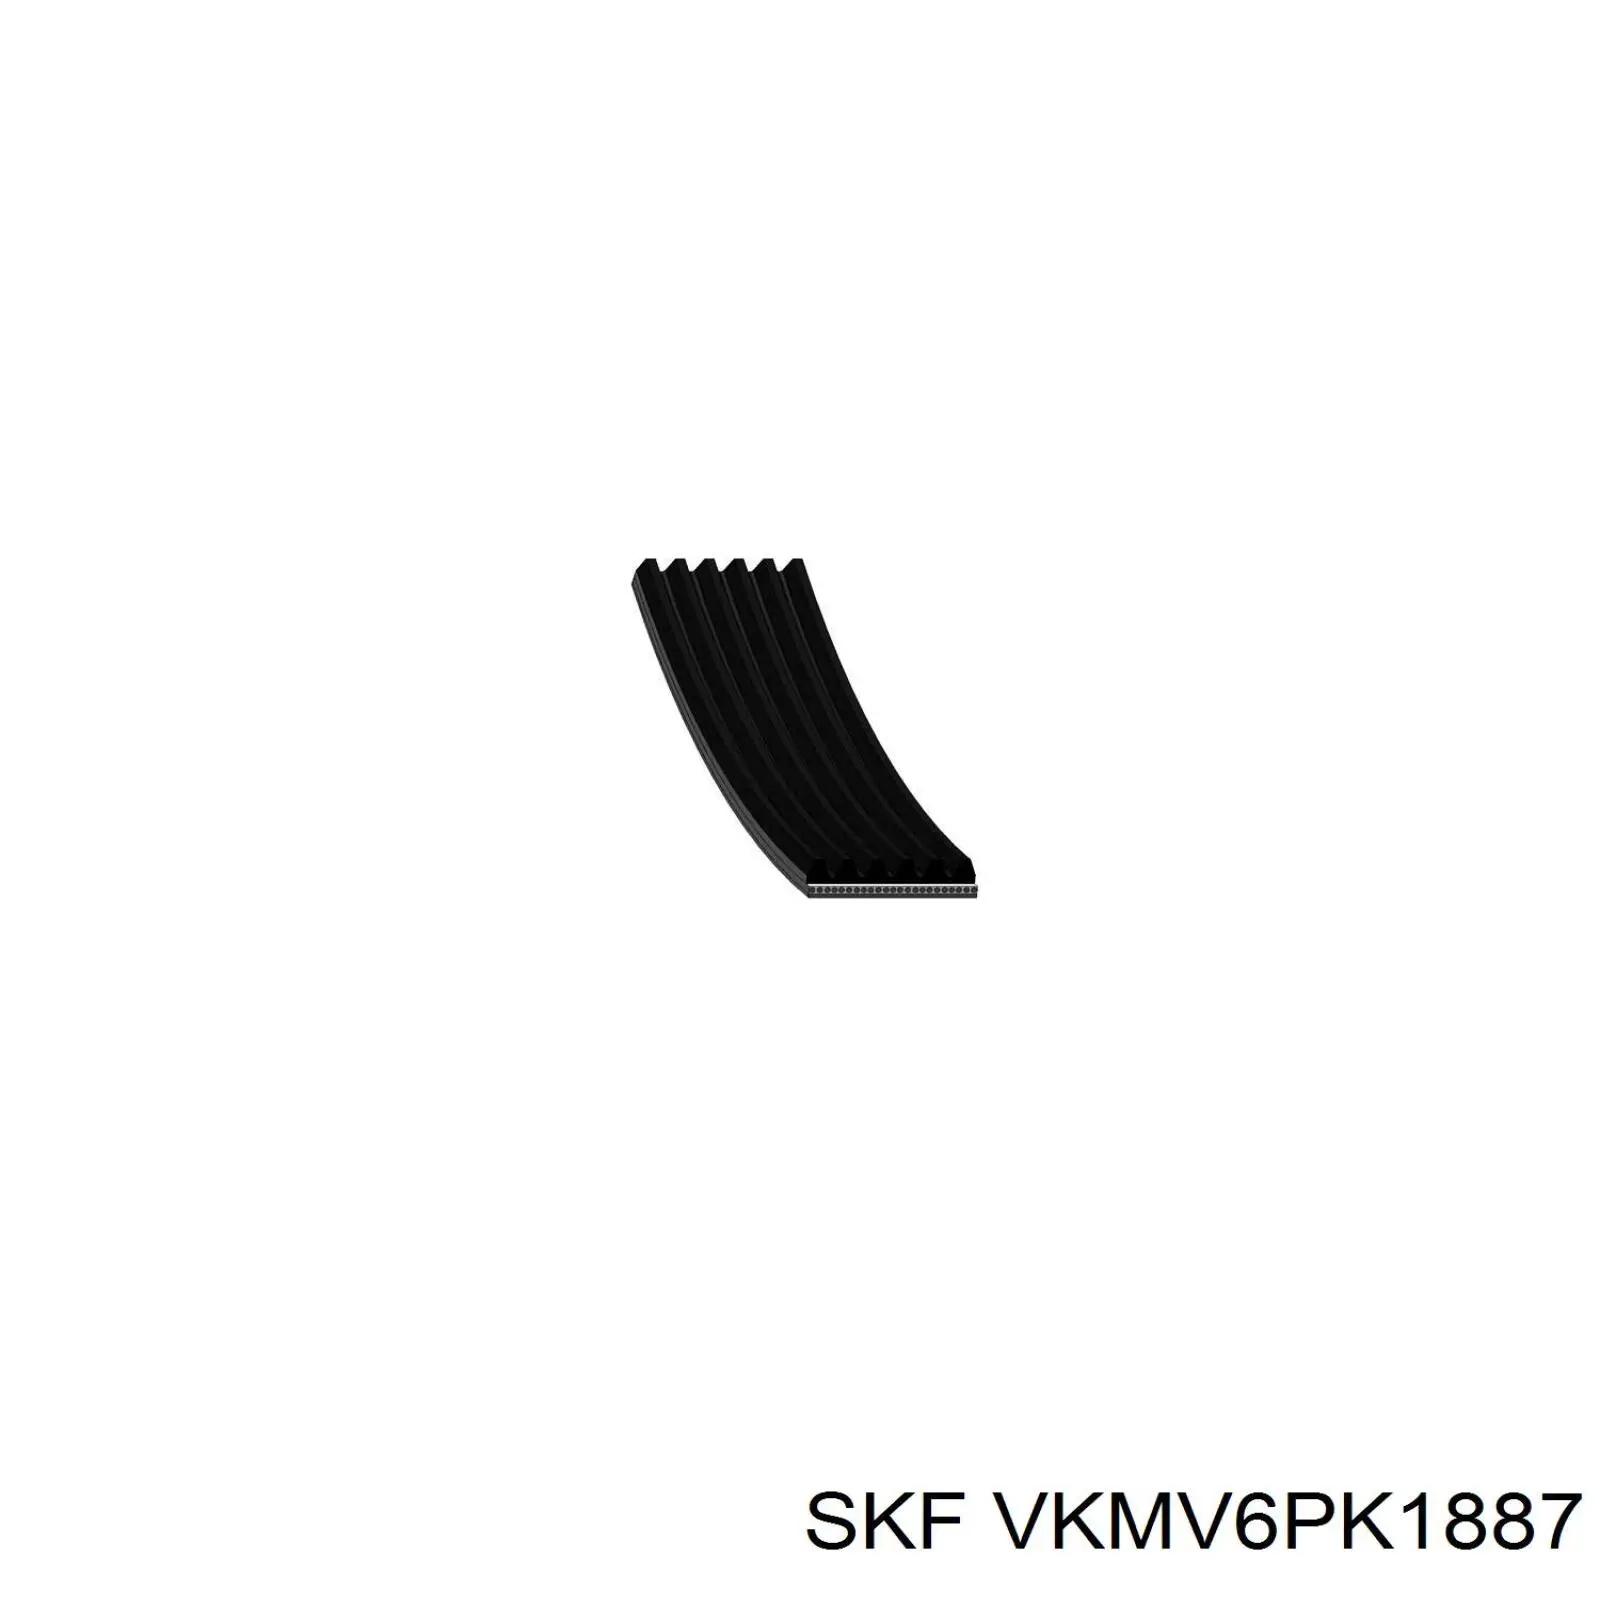 VKMV6PK1887 SKF correa trapezoidal